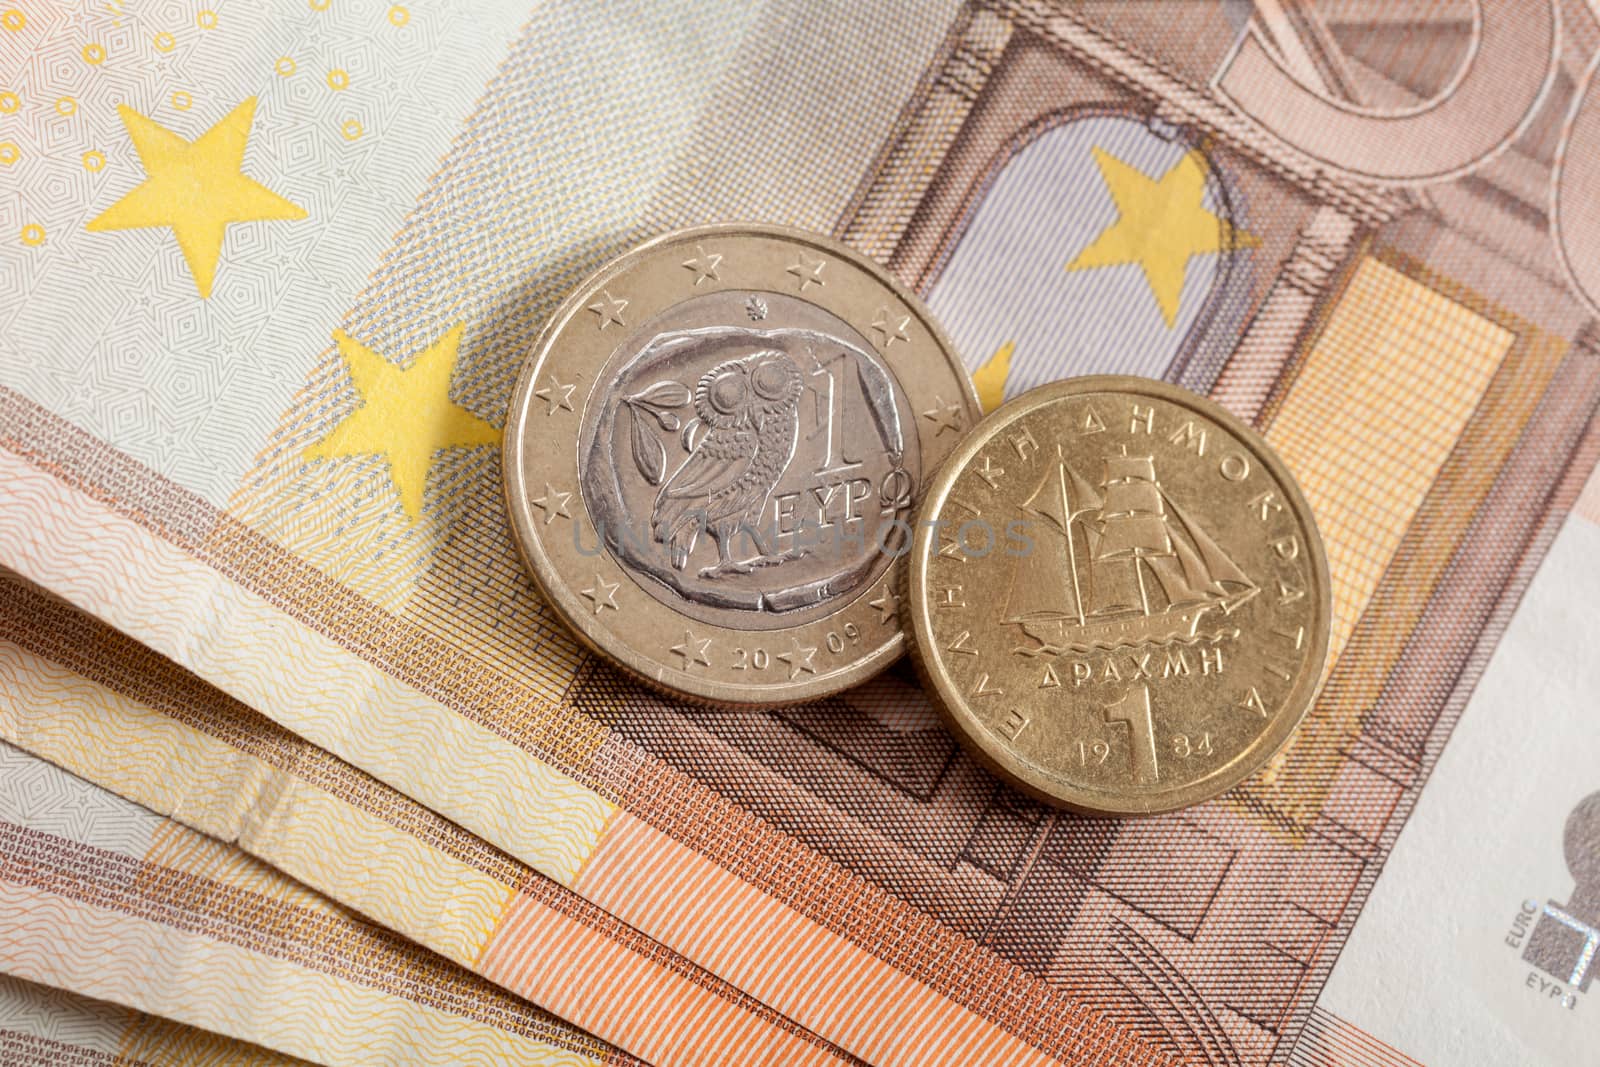 Euro or Drachma by Portokalis